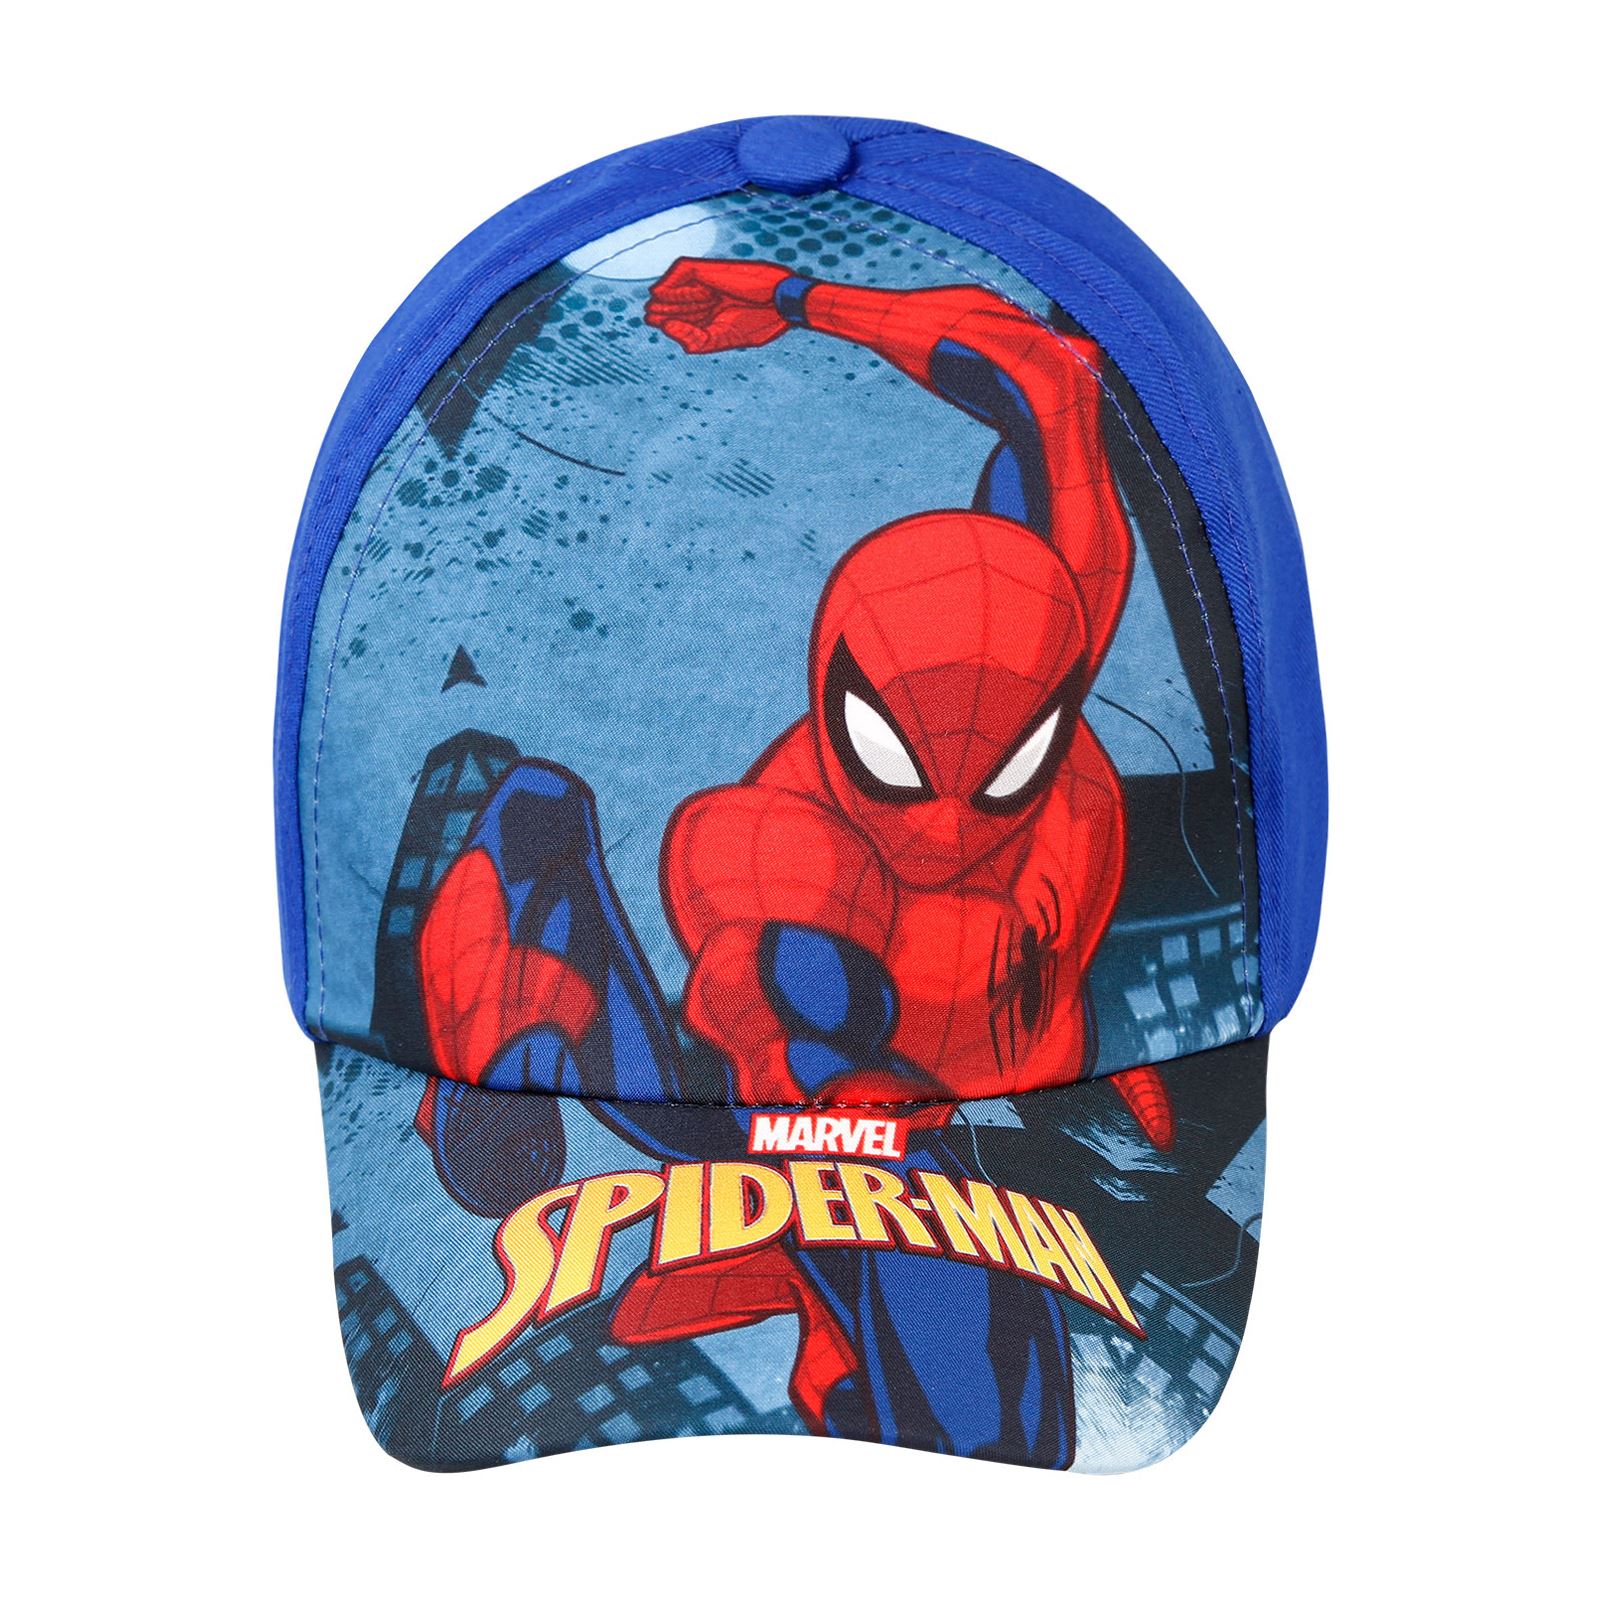 Spiderman Erkek Çocuk Şapka 4-8 Yaş Saks Mavisi